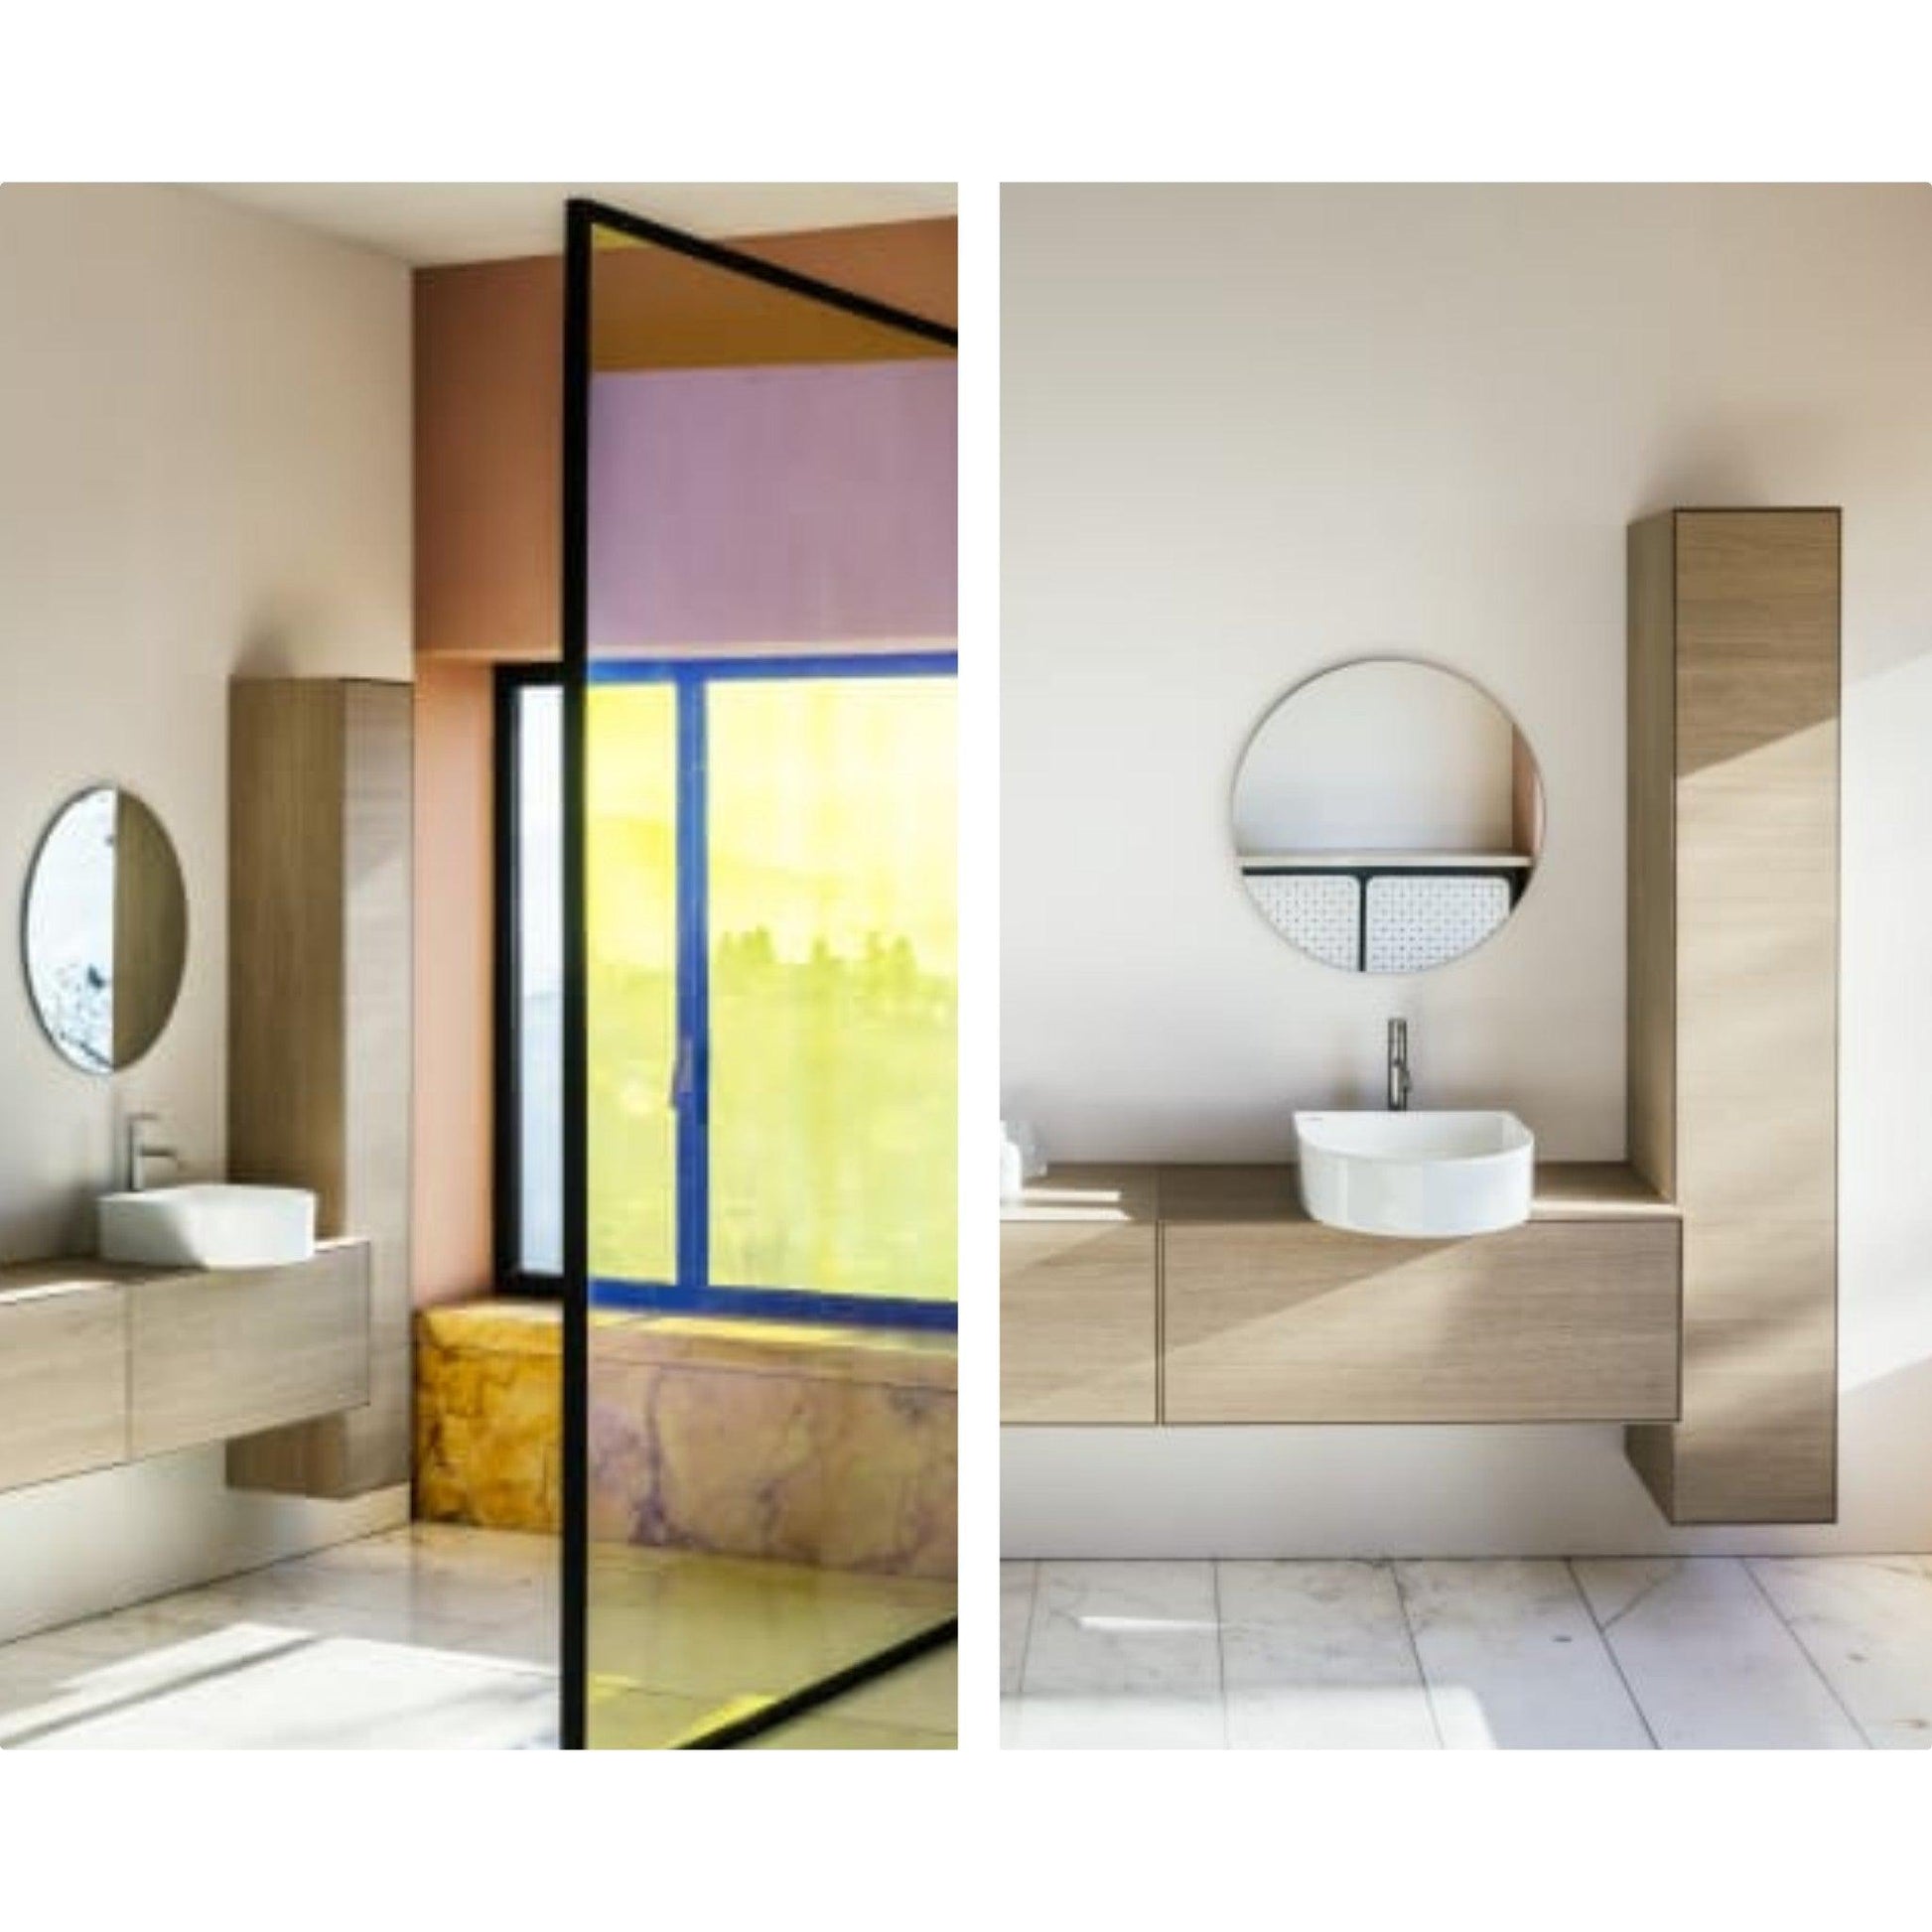 Sonar bathroom collection by Patricia Urquiola for Laufen